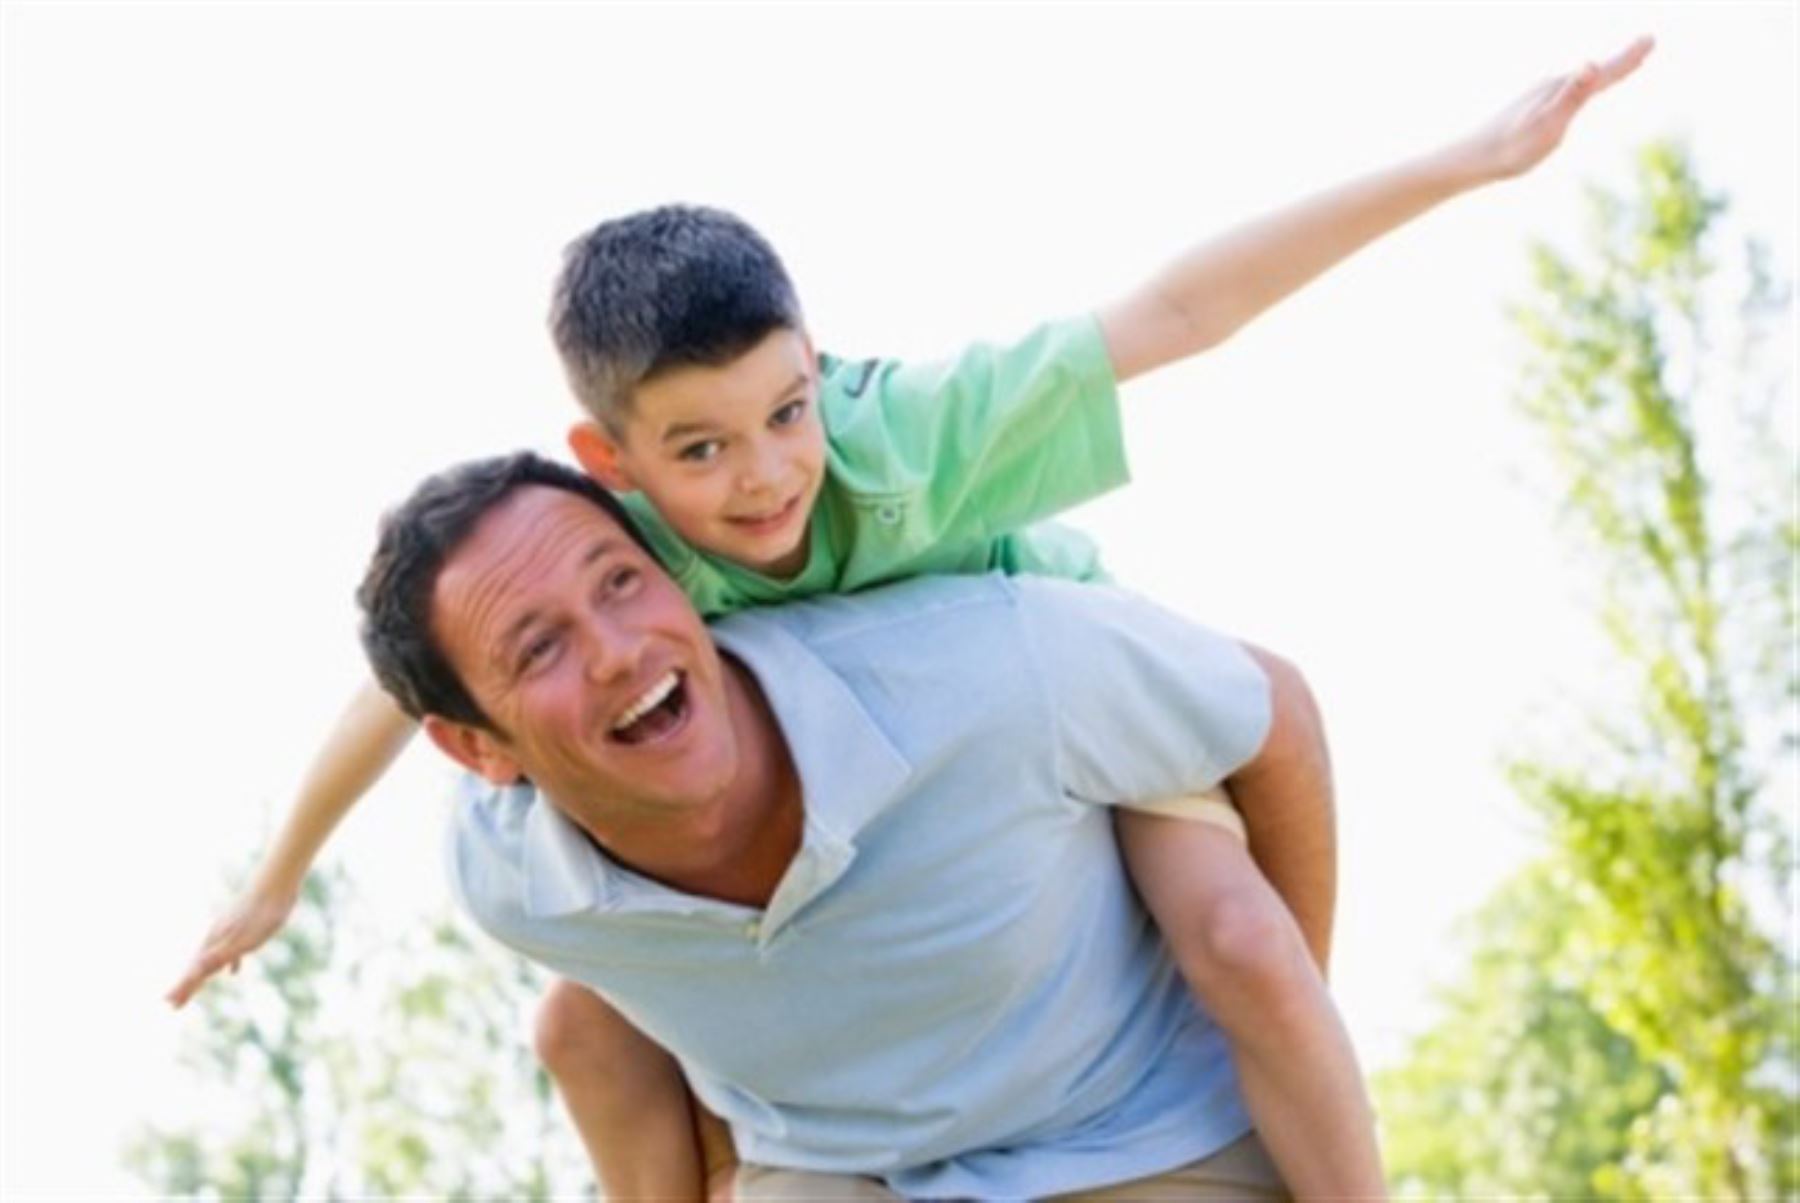 Un papá ideal es aquel que se comunica con sus hijos y conoce sus intereses. Foto: Internet/Medios